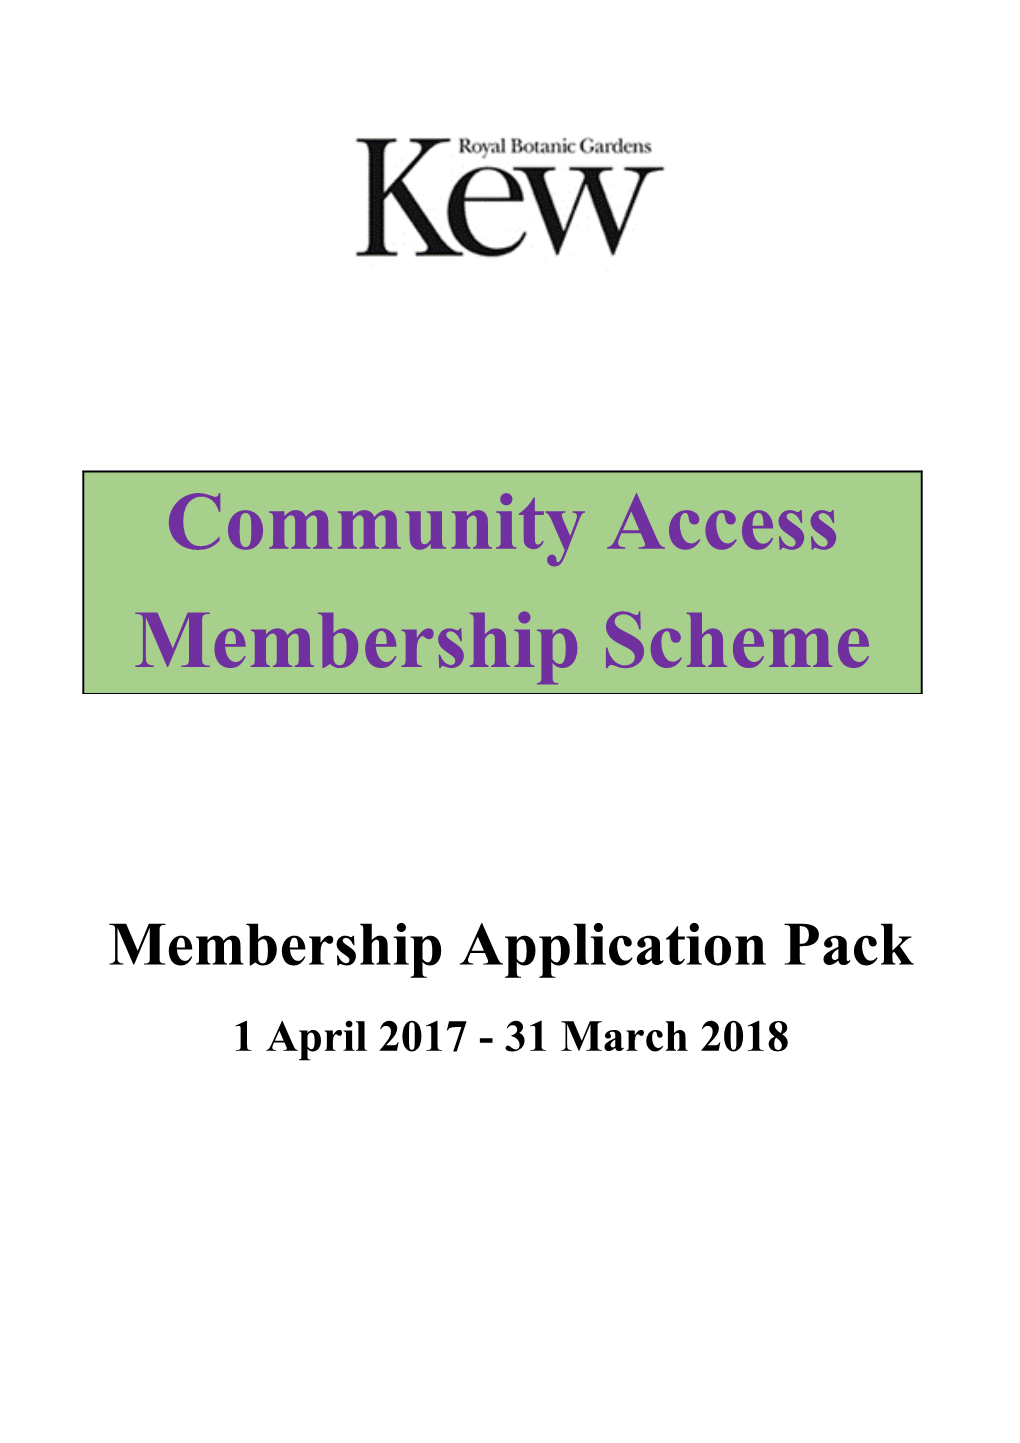 Membership Application Pack